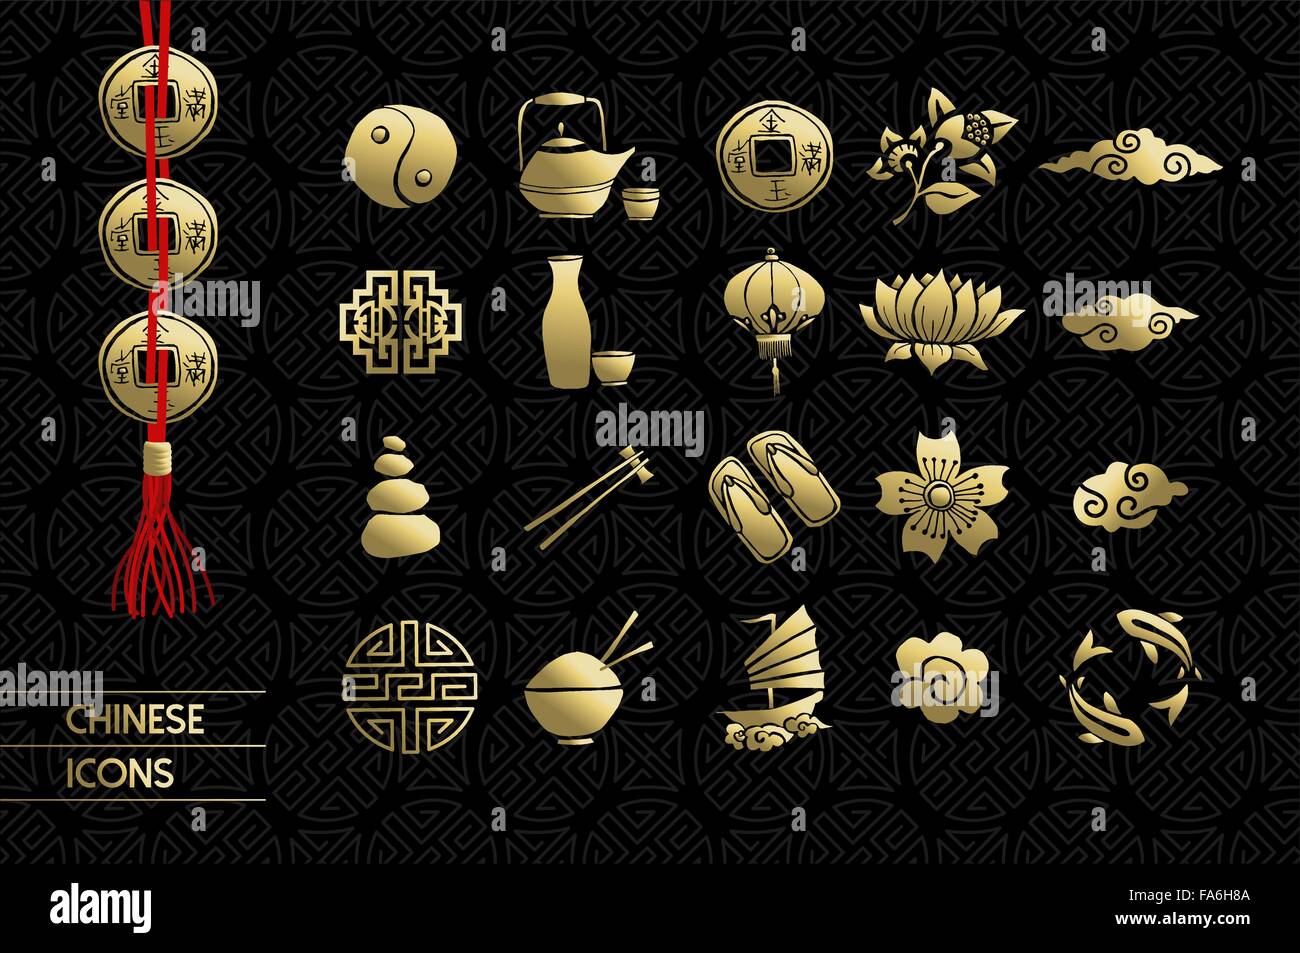 Gold chinesische Symbole festgelegt. Lotusblüte, Elemente der traditionellen Kultur und Dekoration umfasst. EPS10 Vektor. Stock Vektor